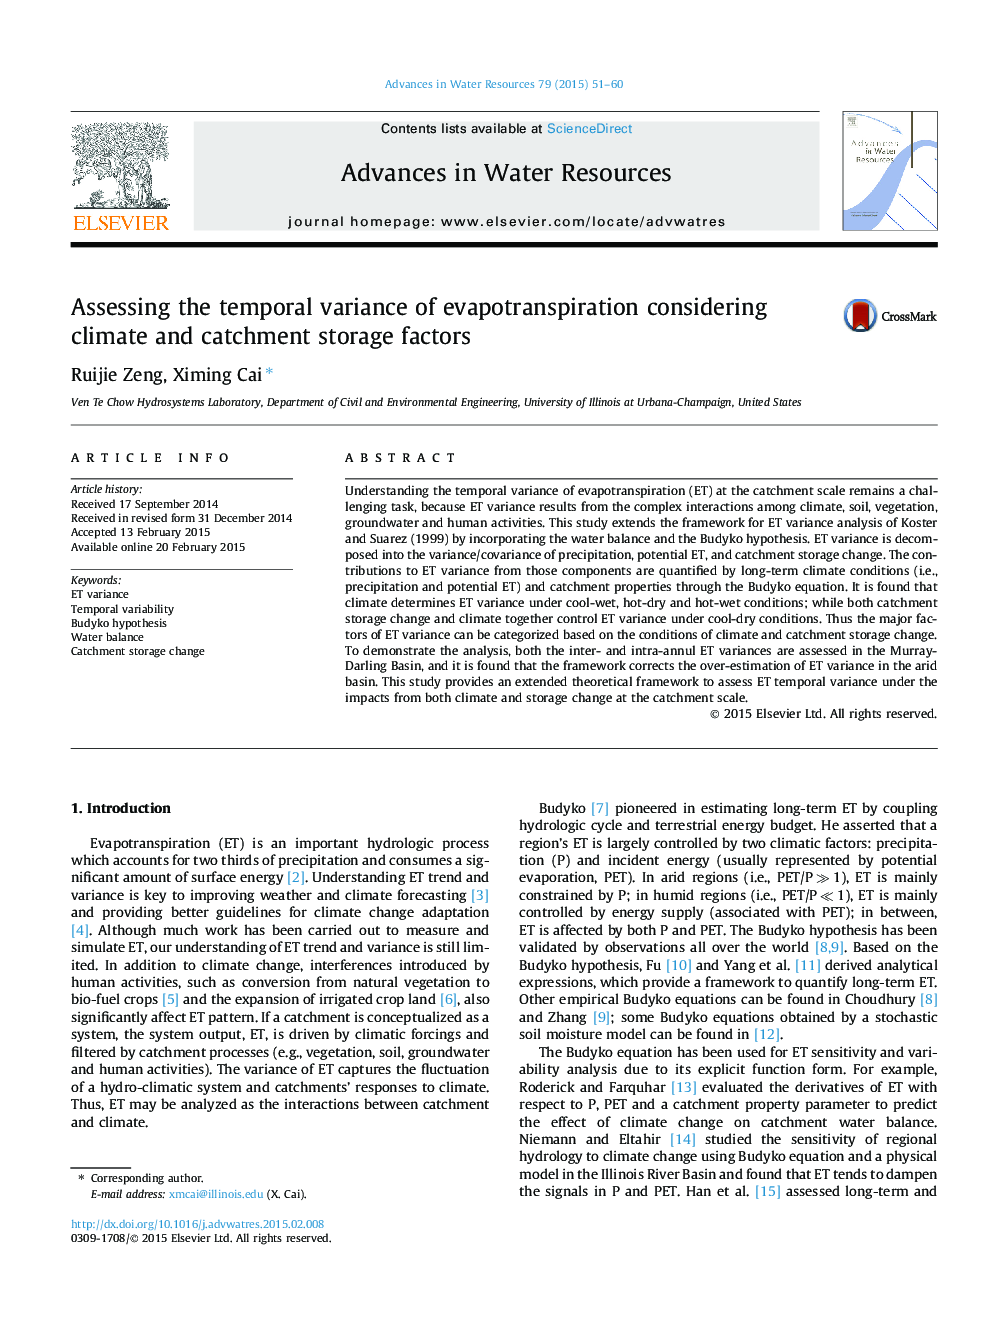 ارزیابی واریانس زمانی بین تبخیر و تعرق با توجه به فاکتورهای ذخیره سازی آب وهوا و ساحلی 